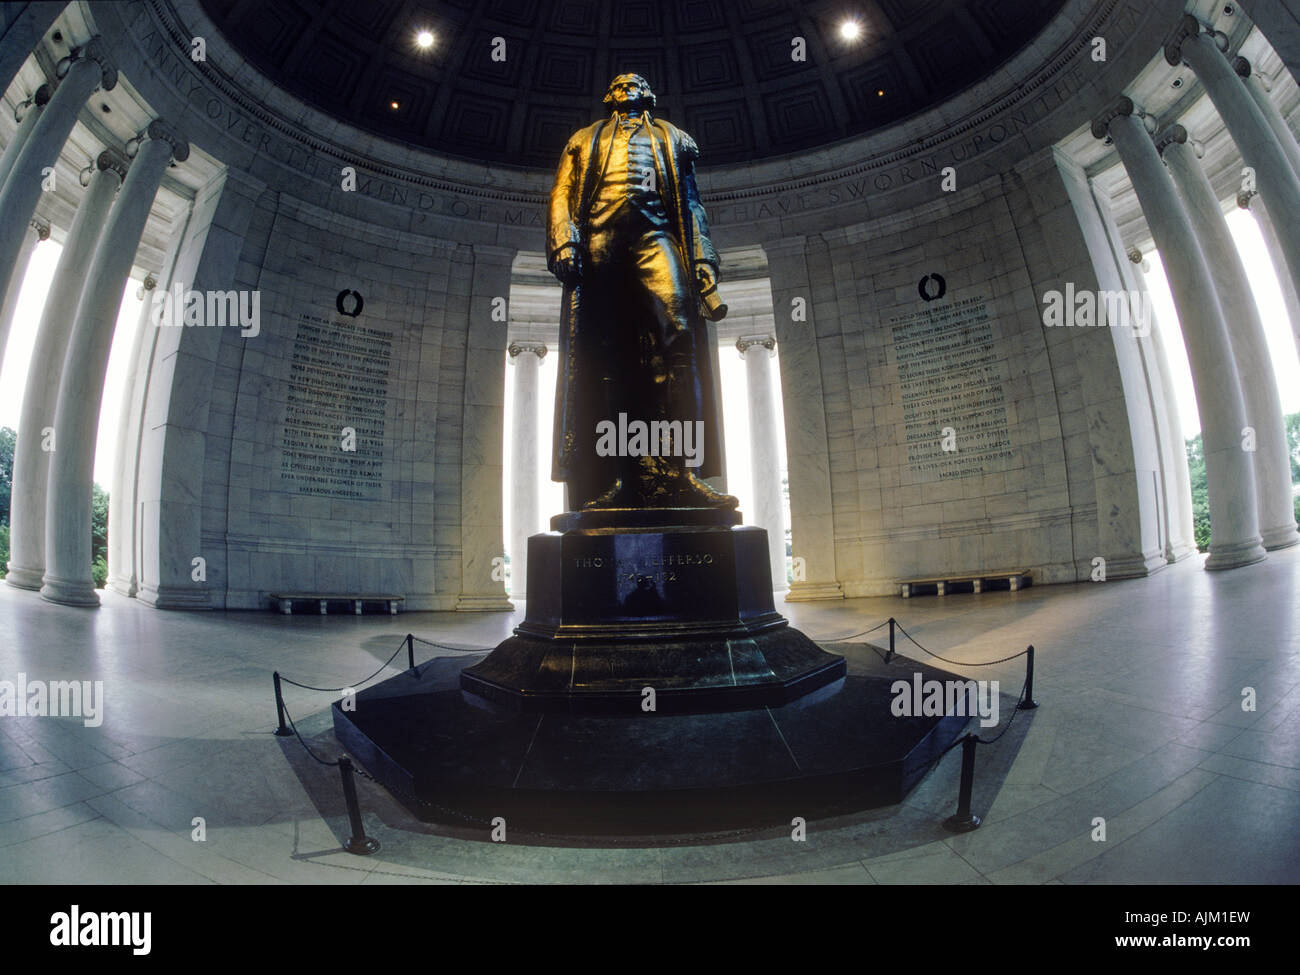 Bronzestatue in der Rotunde im Jefferson Memorial in Washington, D.C. Stockfoto